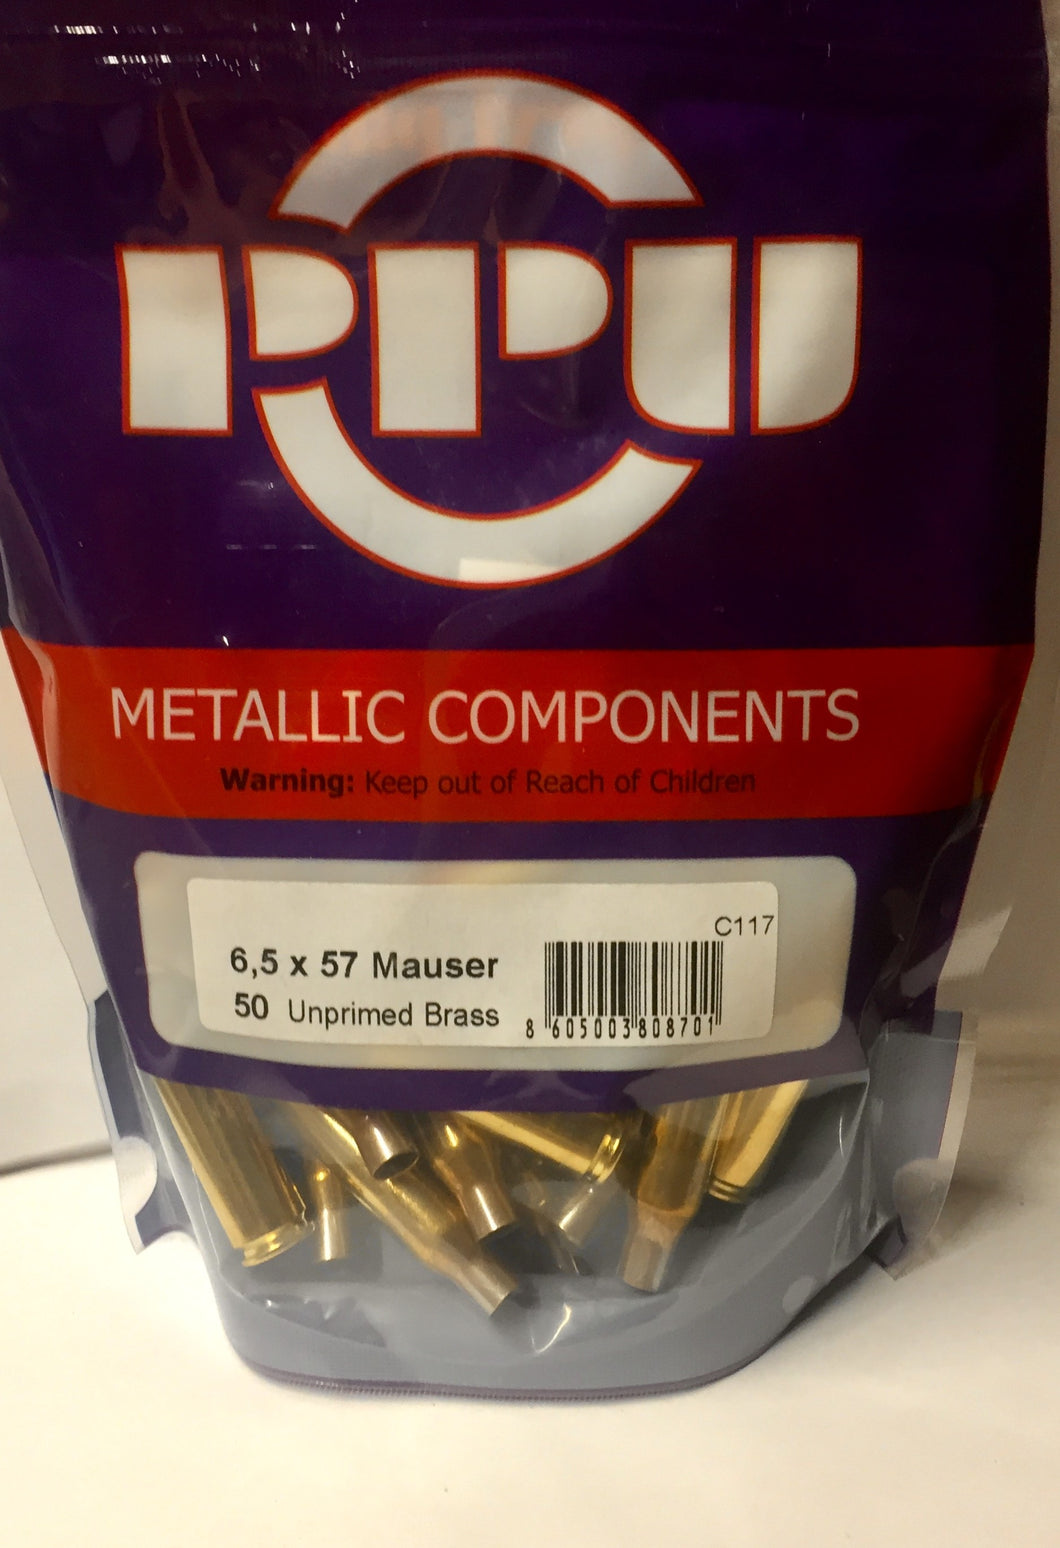 6,5 x 57 Mauser Unprimed Brass by PPU (50 pcs)